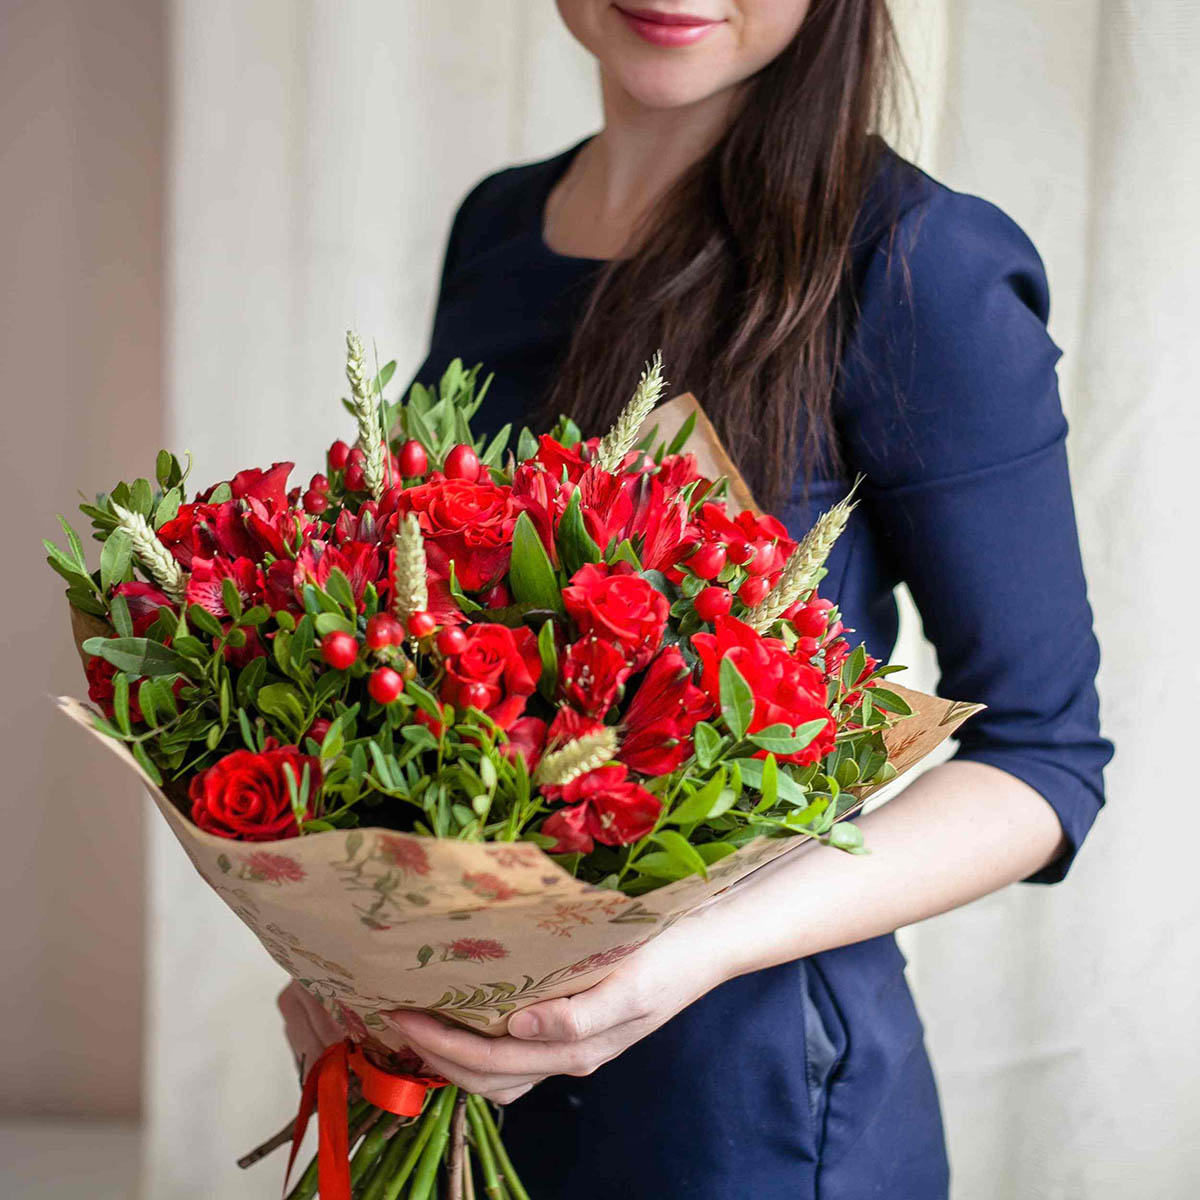 Разнообразная доставка цветов в Мариуполе предлагает красивые букеты